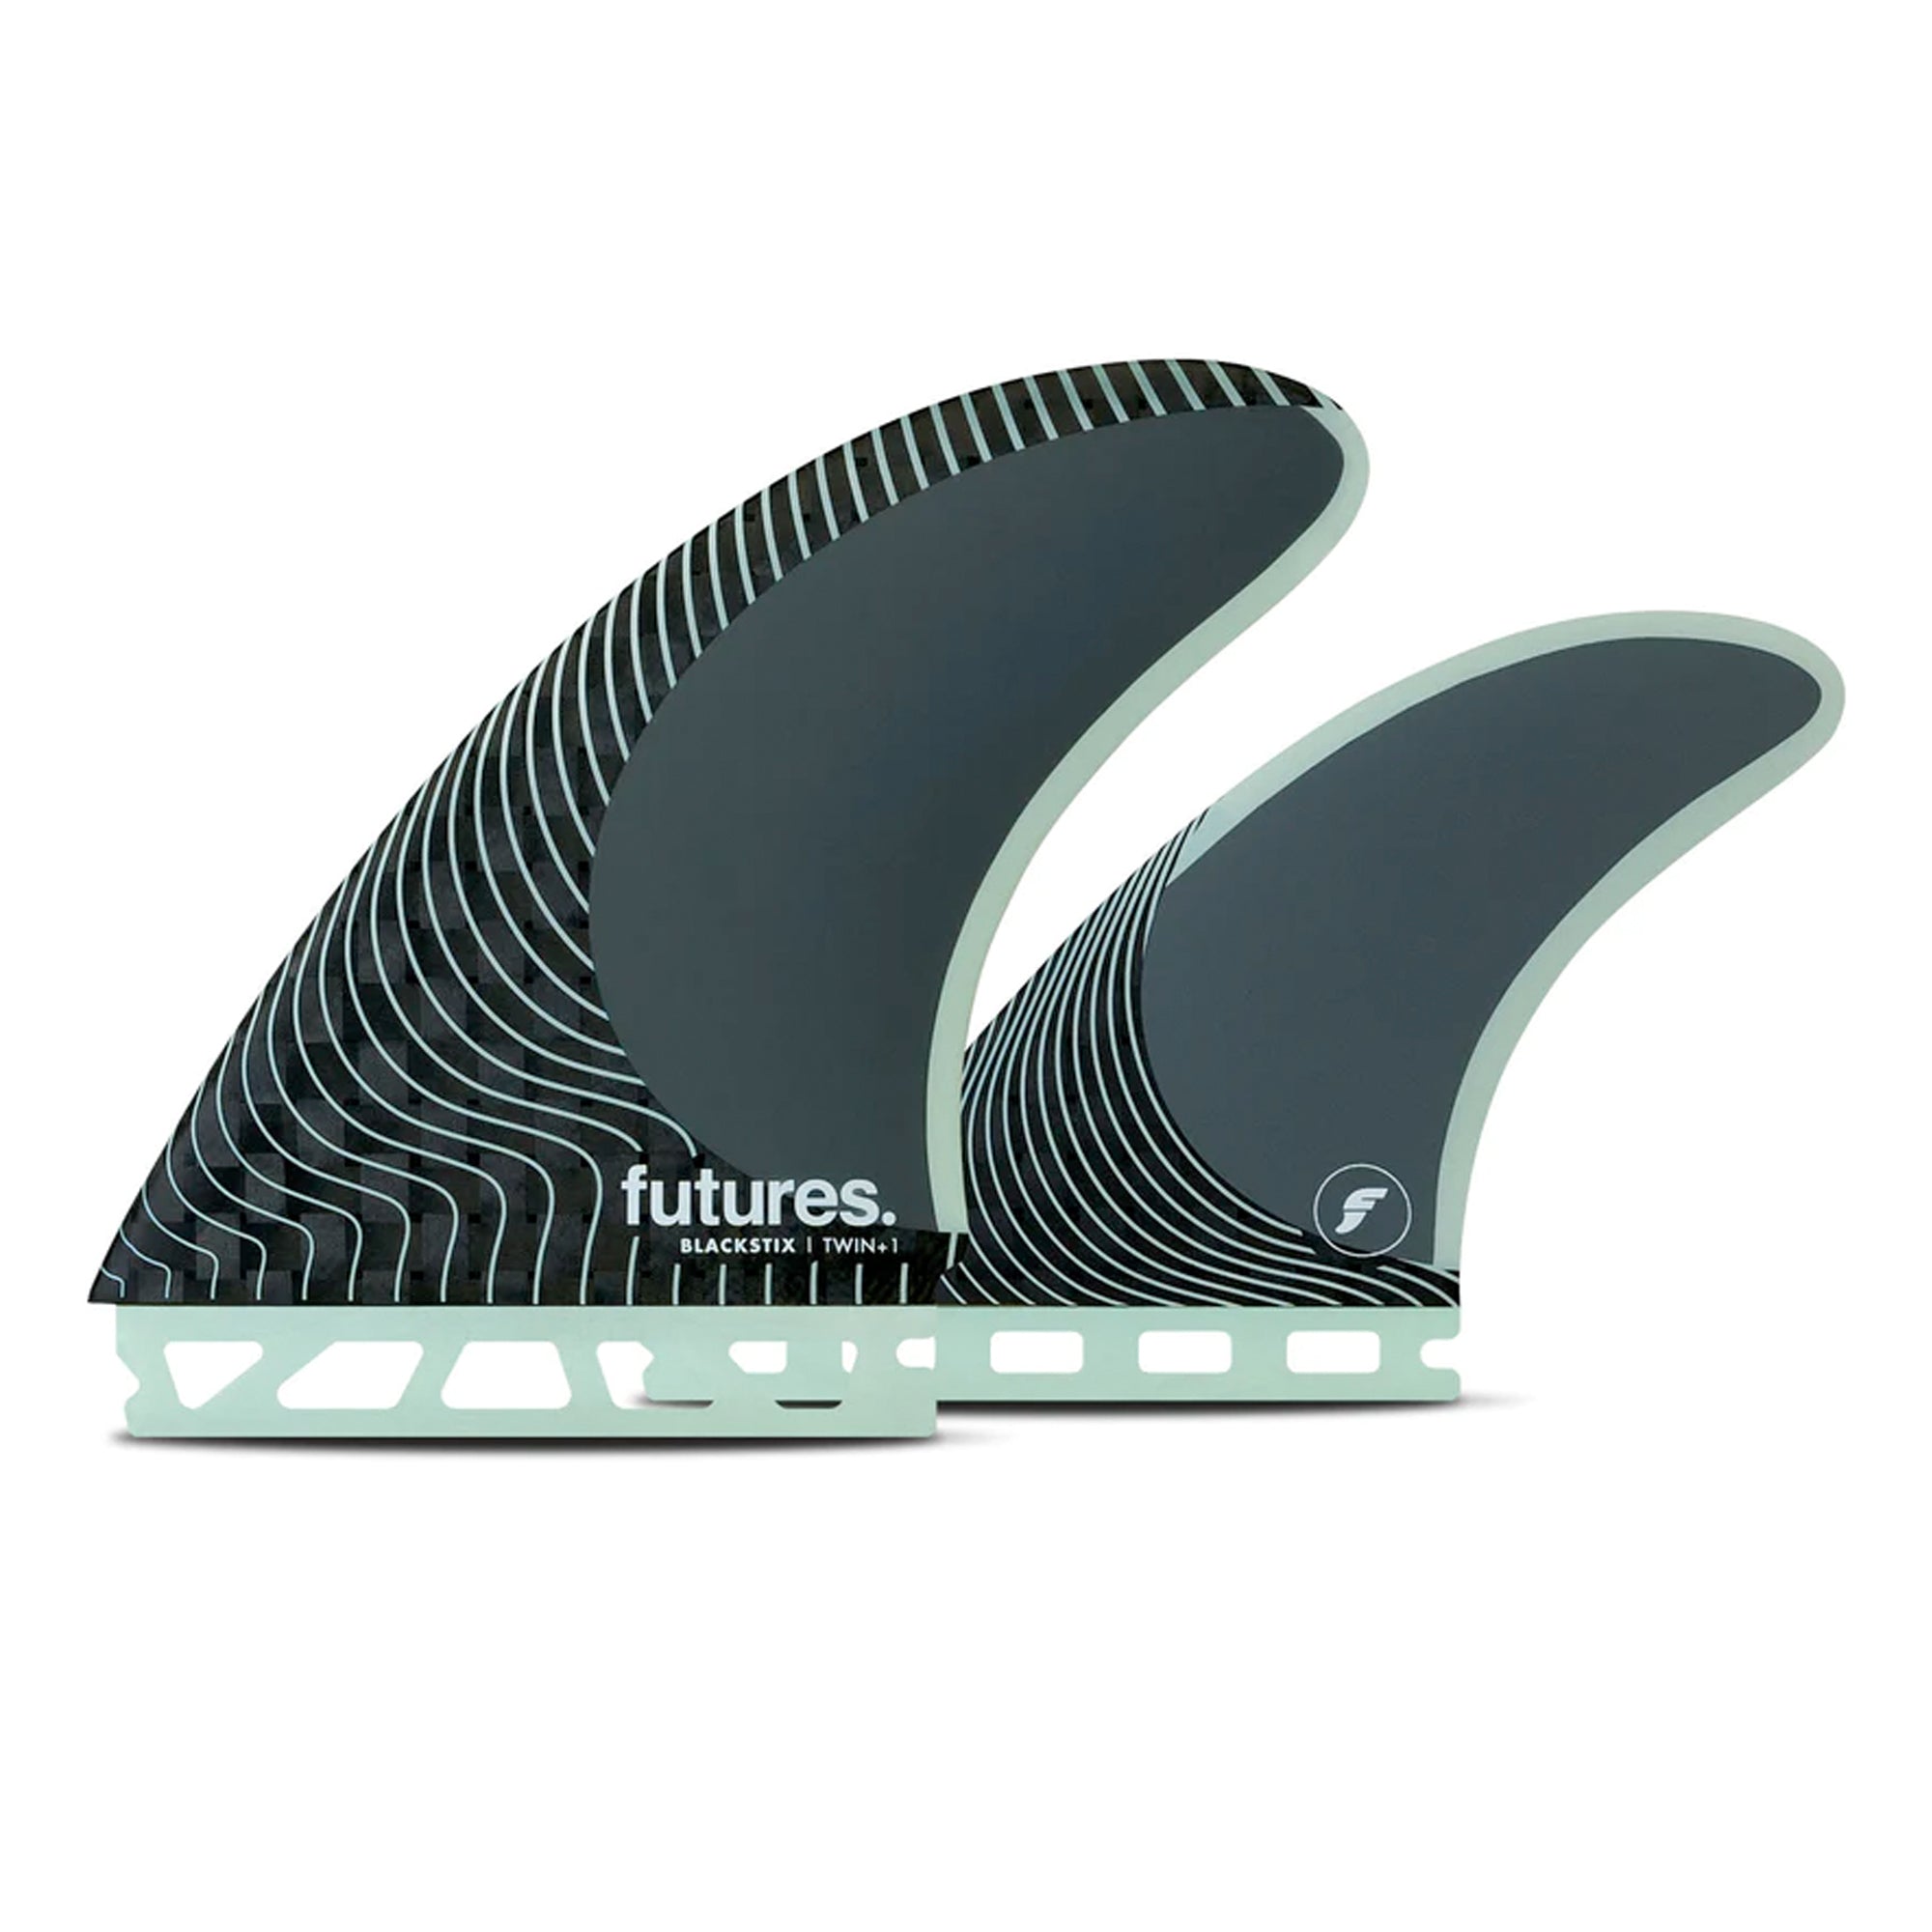 Futures Blackstix Twin + 1 Surfboard Fin Set